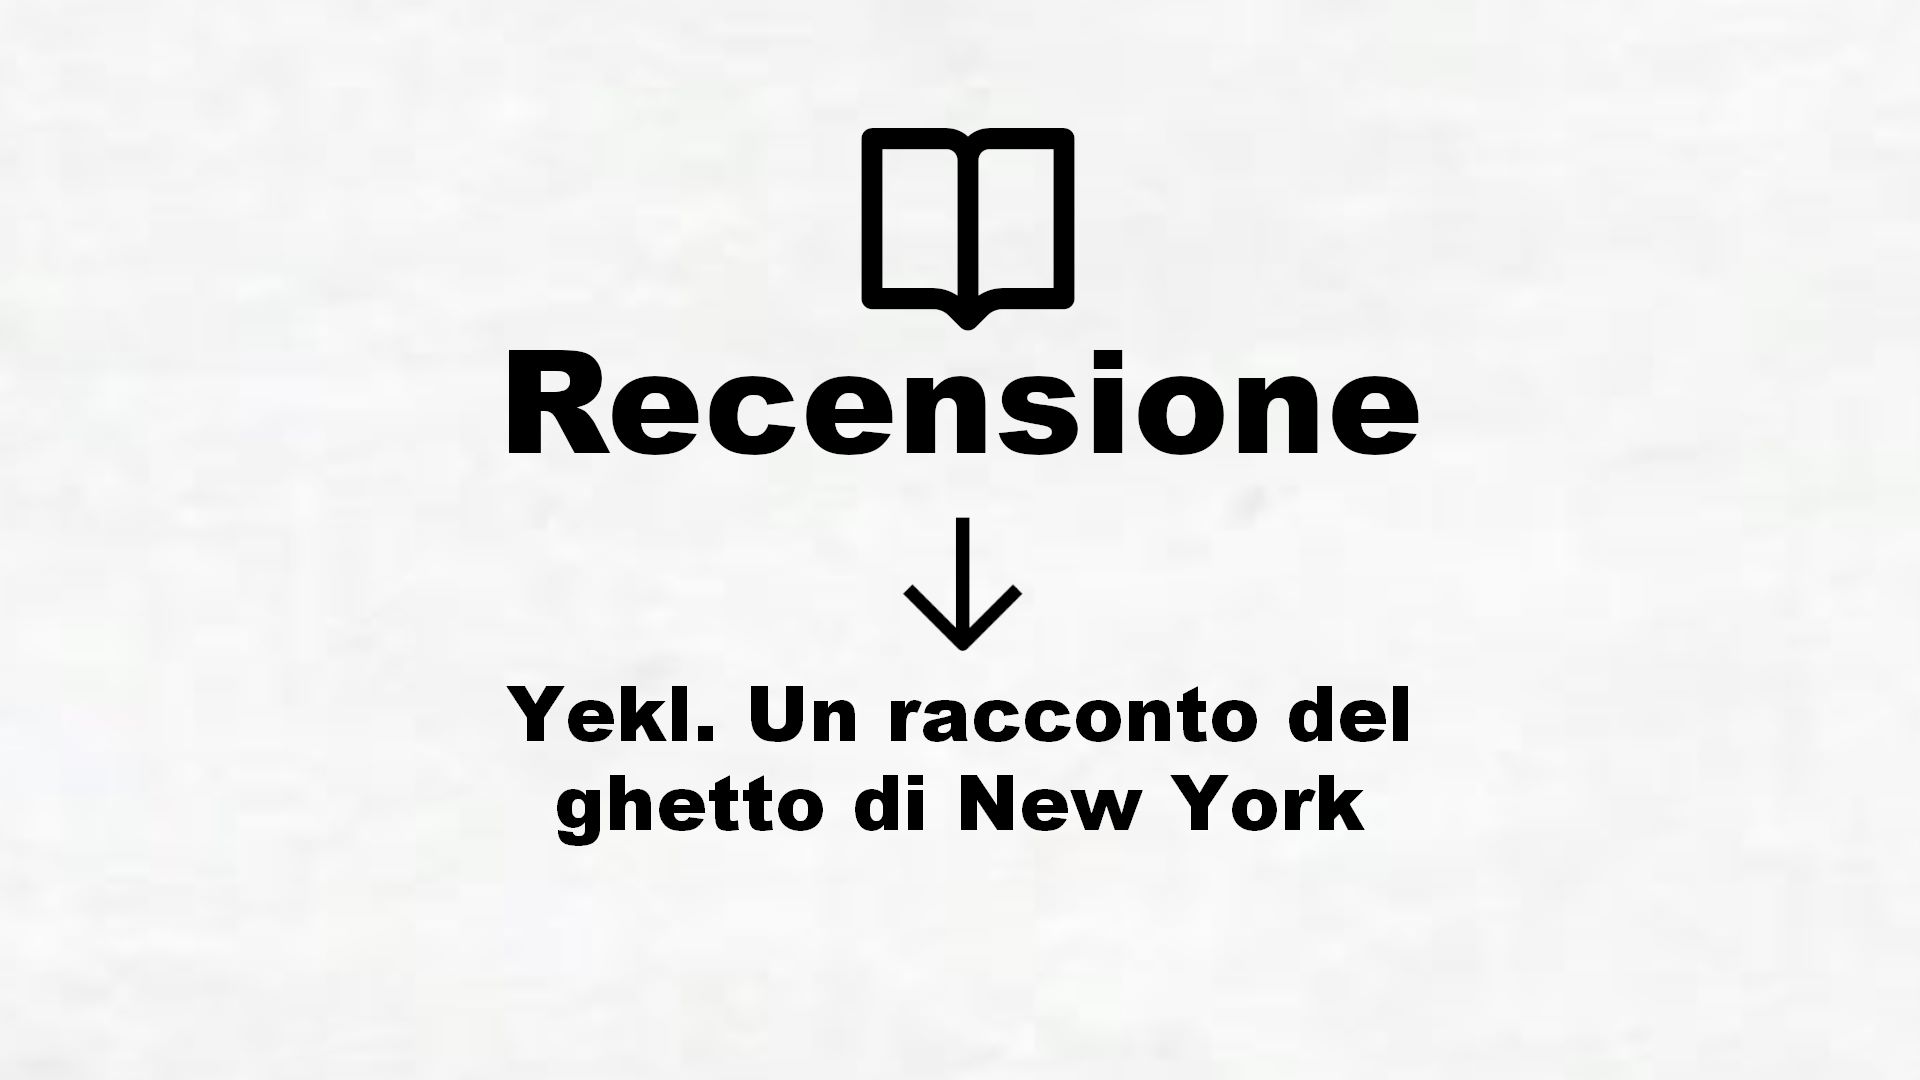 Yekl. Un racconto del ghetto di New York – Recensione Libro